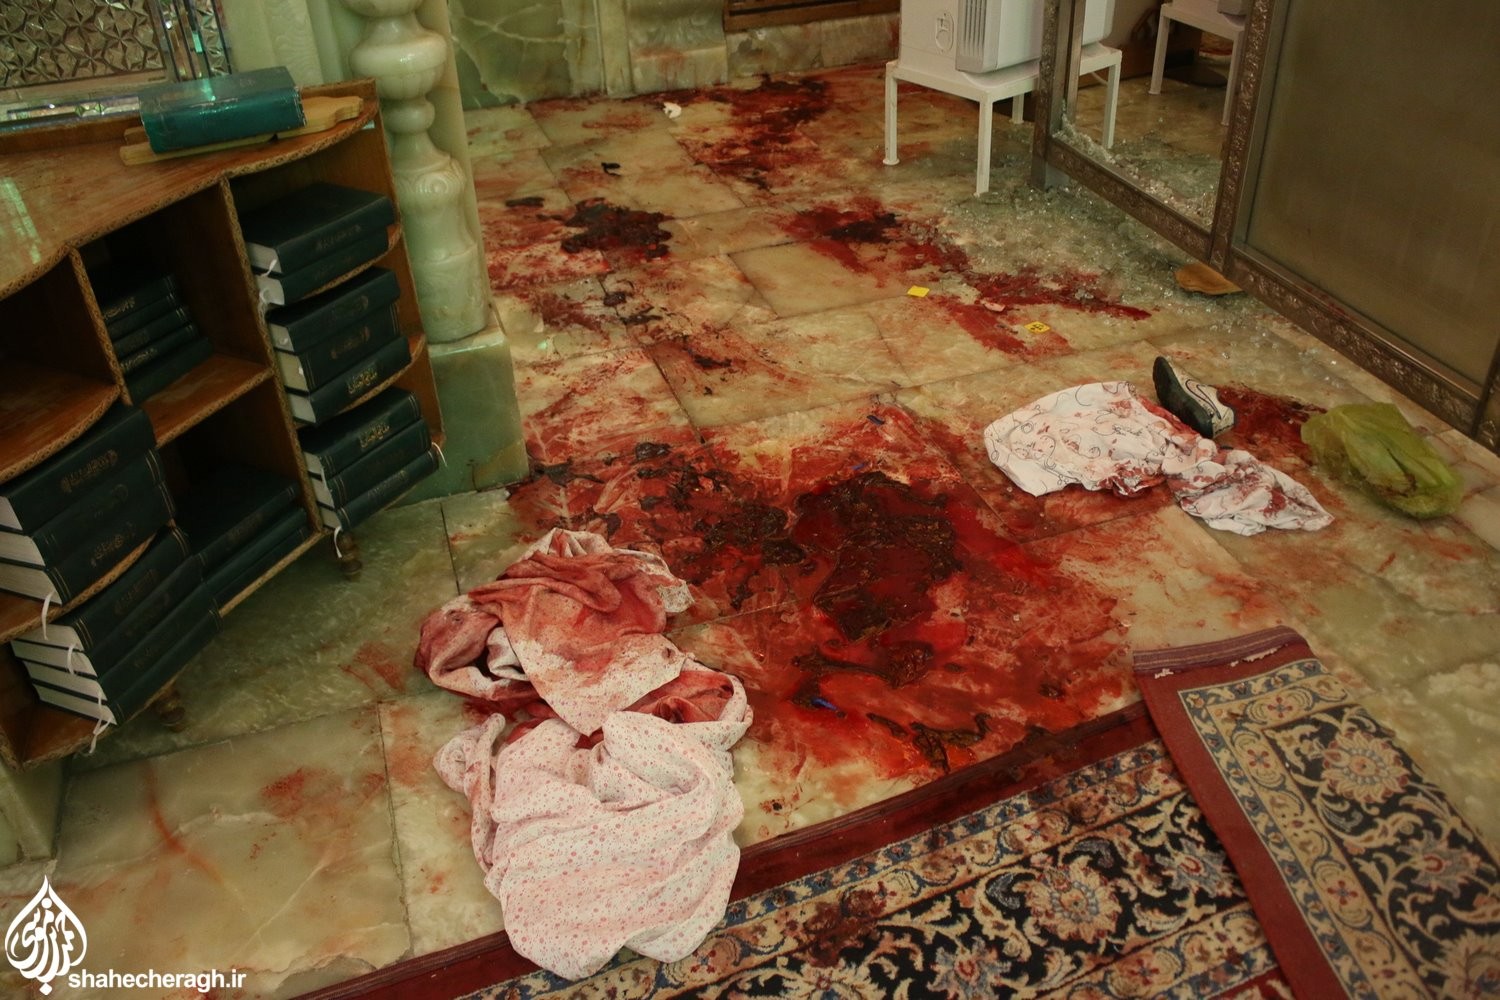 В Иране открыли стрельбу у мавзолея Шах-Черах: 15 погибших, десятки раненых (фото) - 2 - изображение